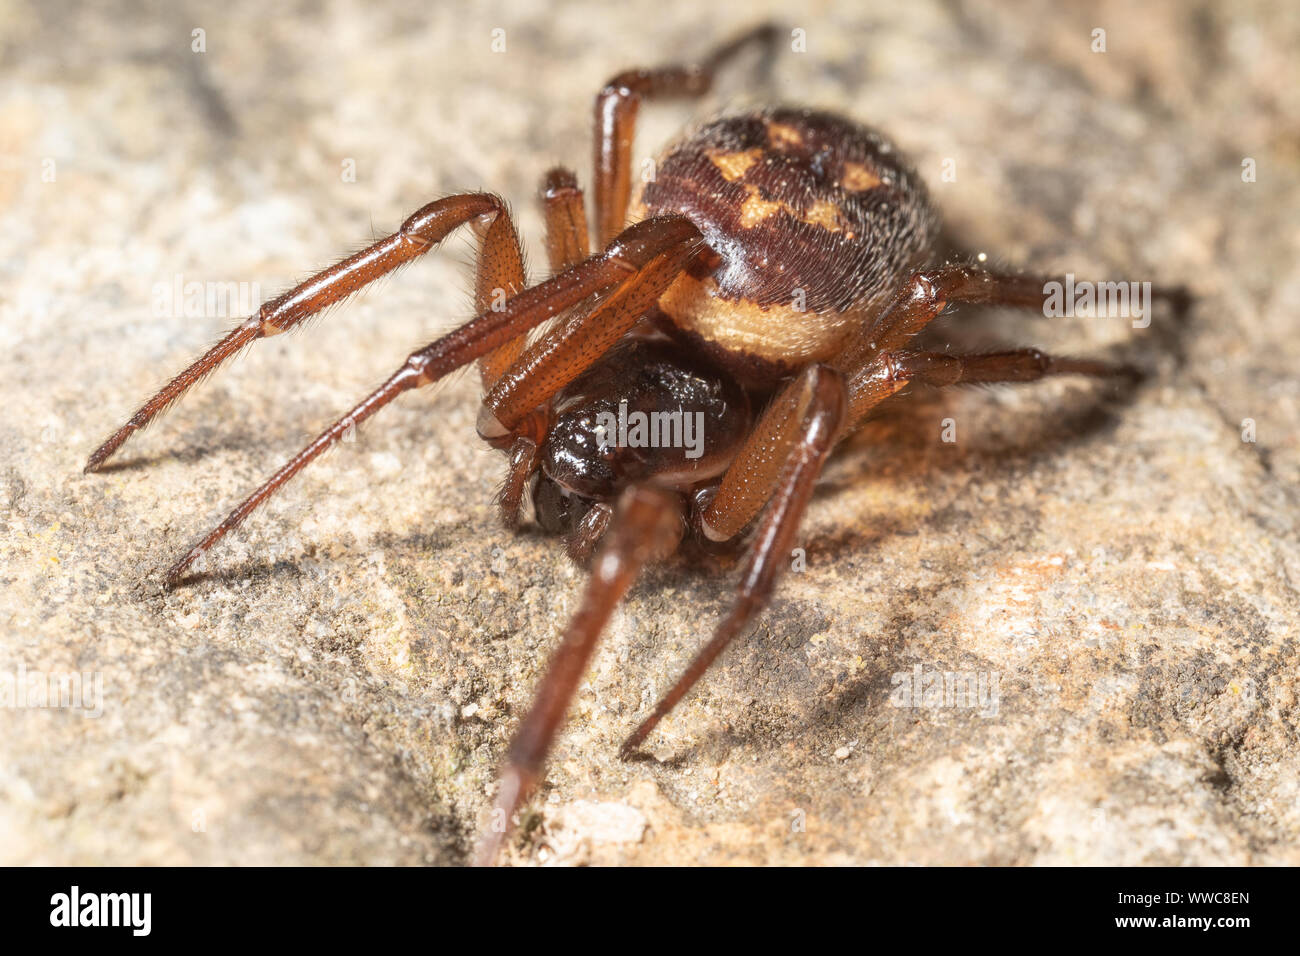 Femmina falsi nobili vedova spider - una specie che ha avuto una diffusa attenzione da parte dei media a causa del pericolo alledged che pone alle persone. Foto Stock